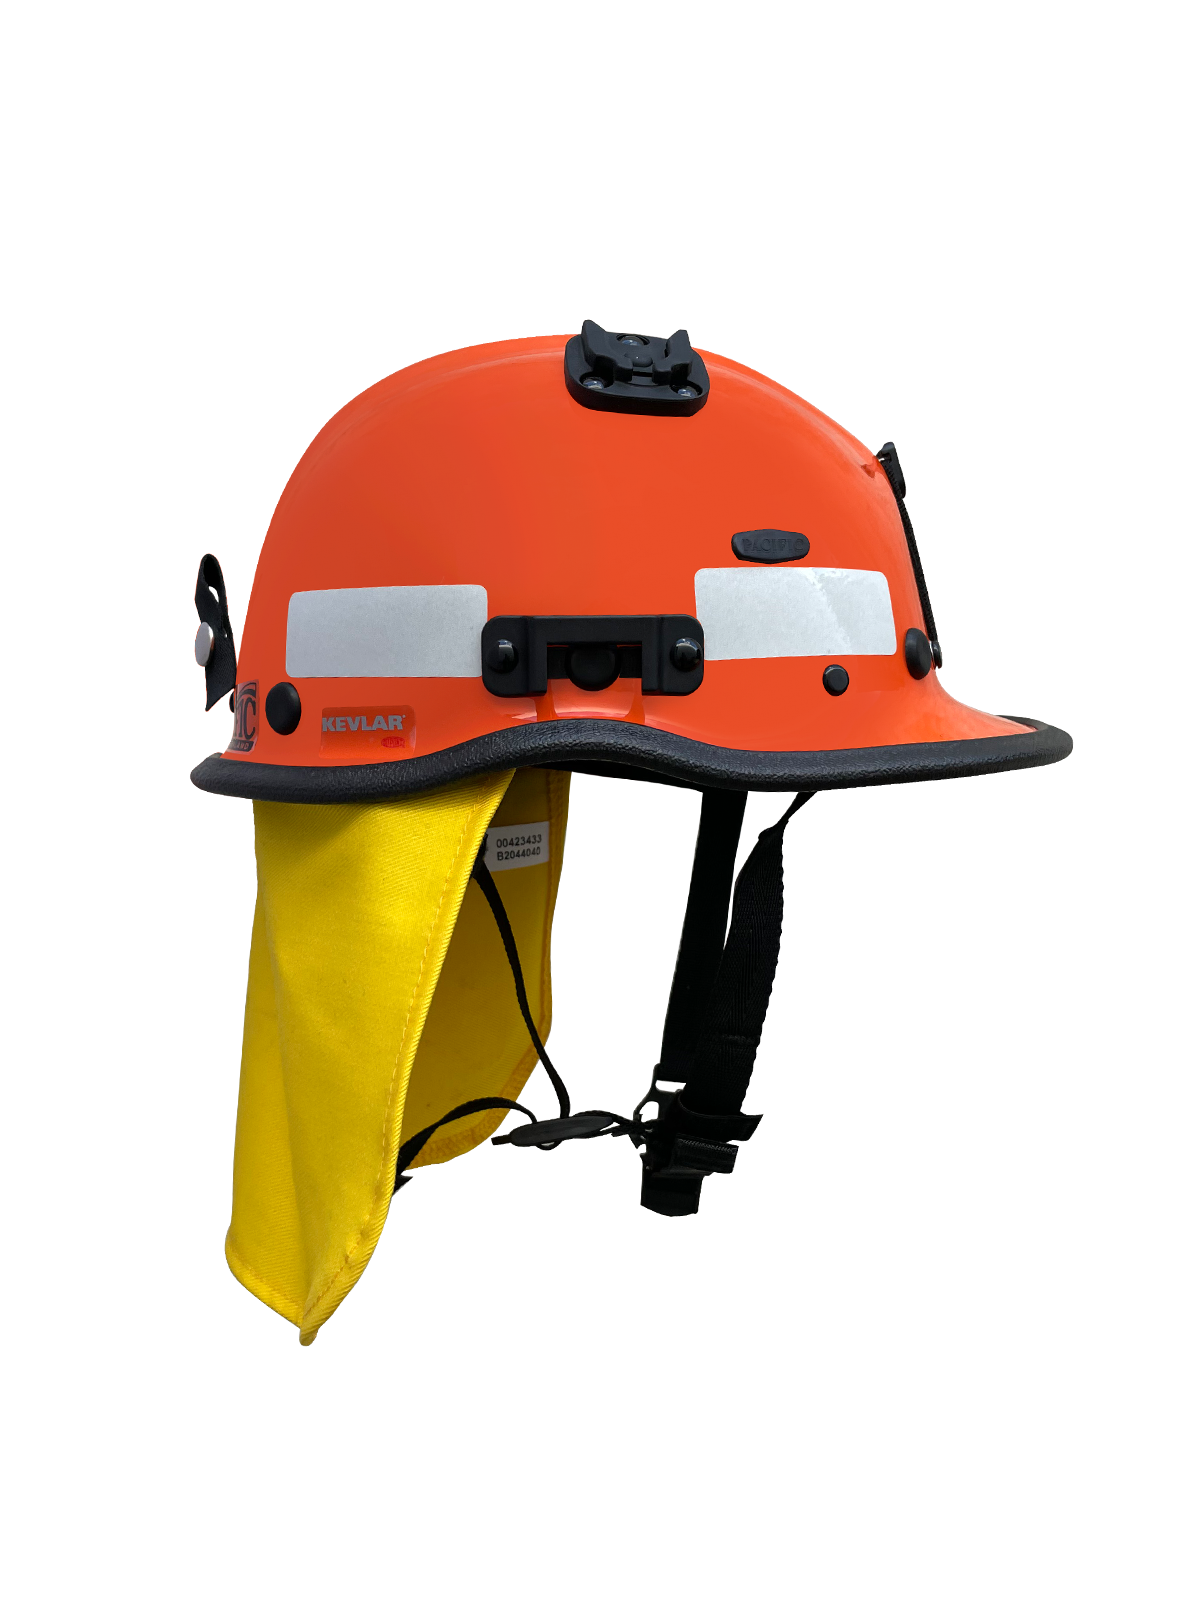 Pacific Helmet - R5S Rescue - LRV8 Rescue